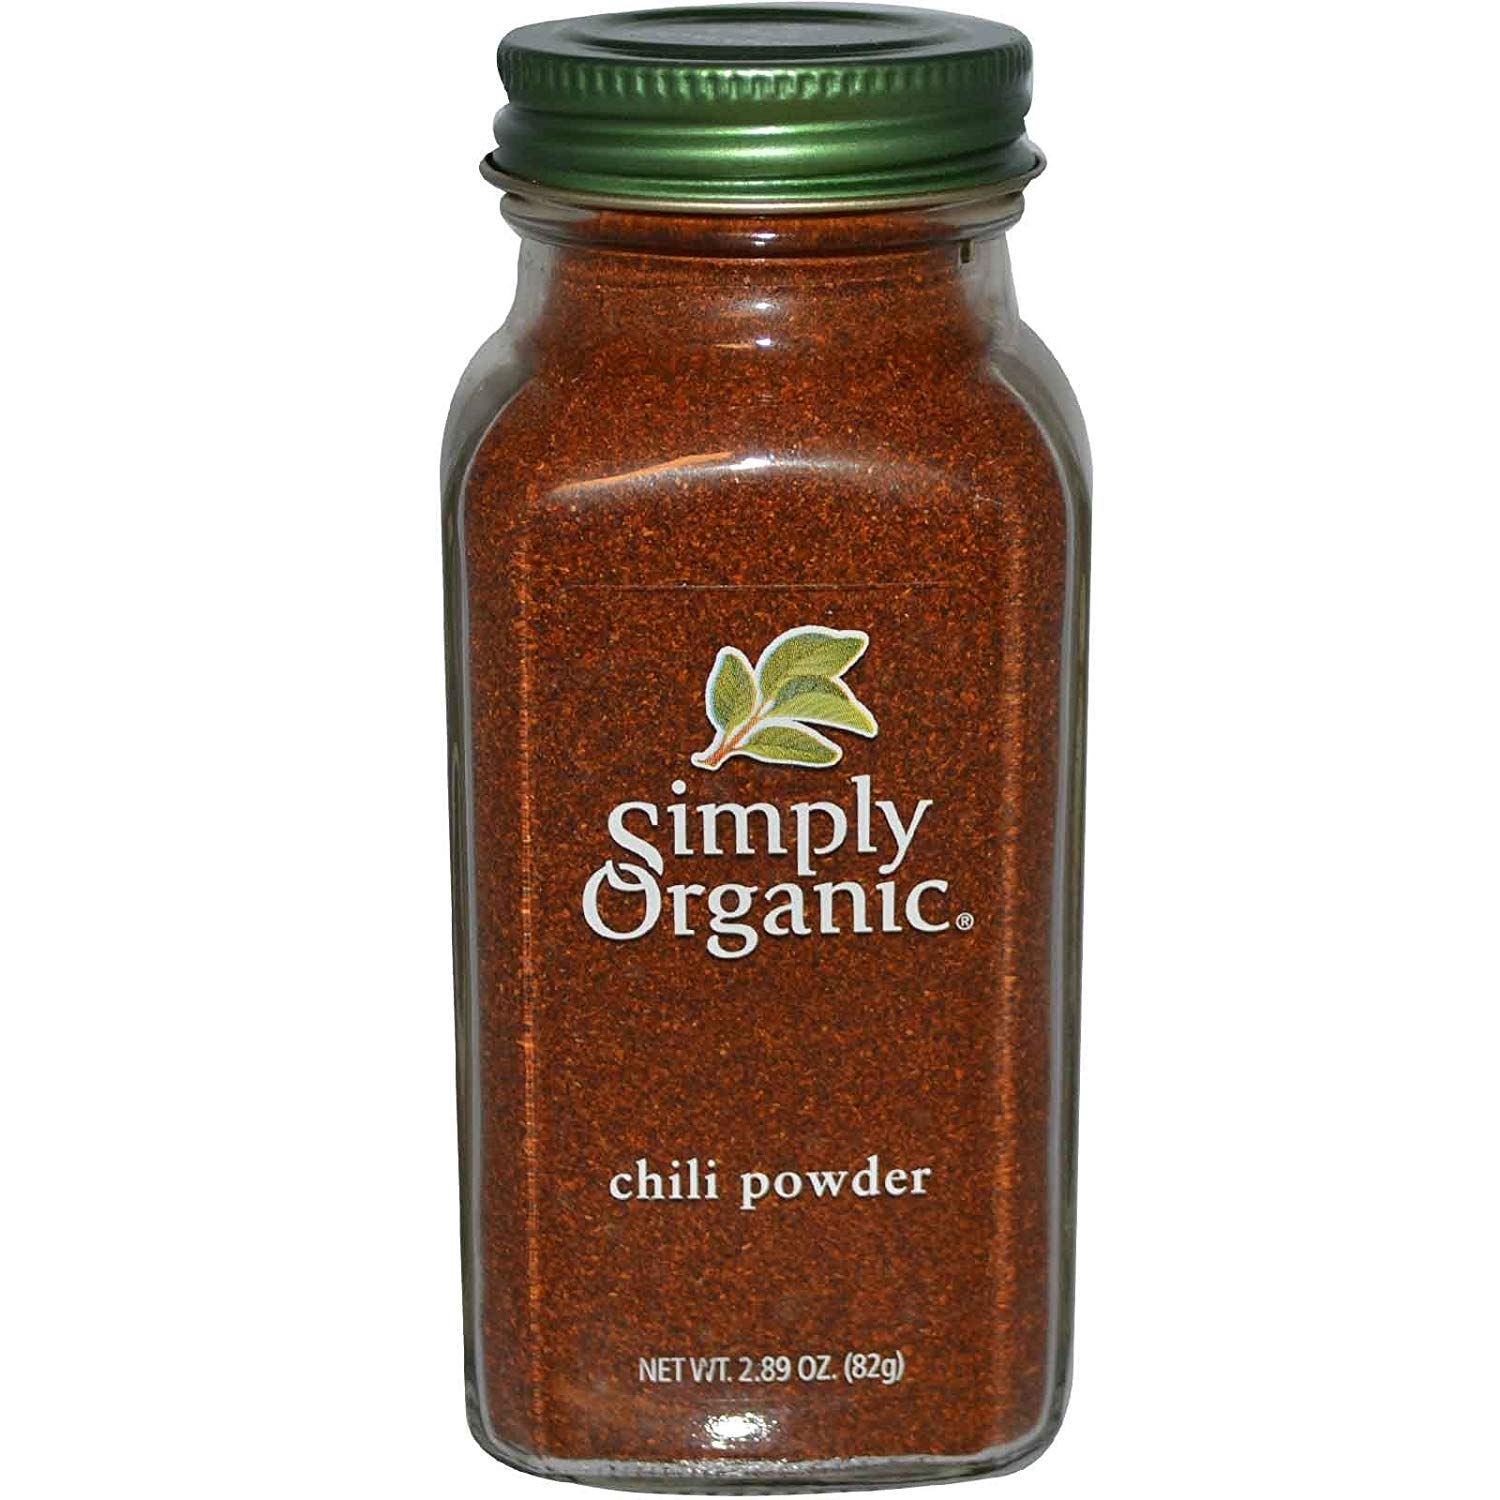 Simply Organic, Chili Powder, 2.89 oz